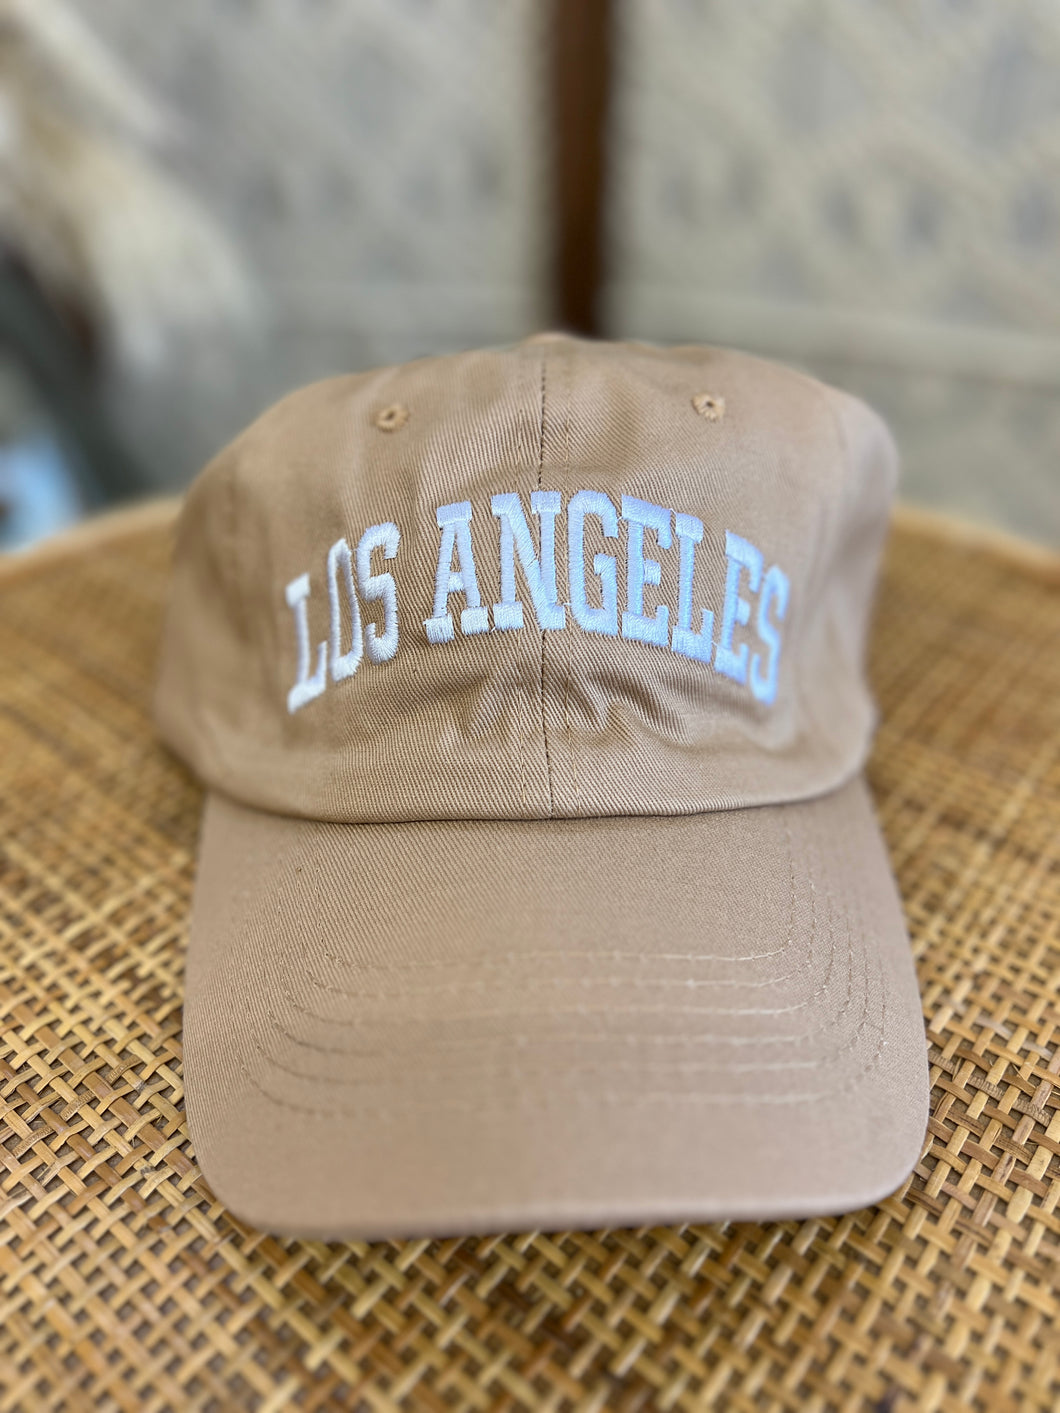 Los Angeles Cap